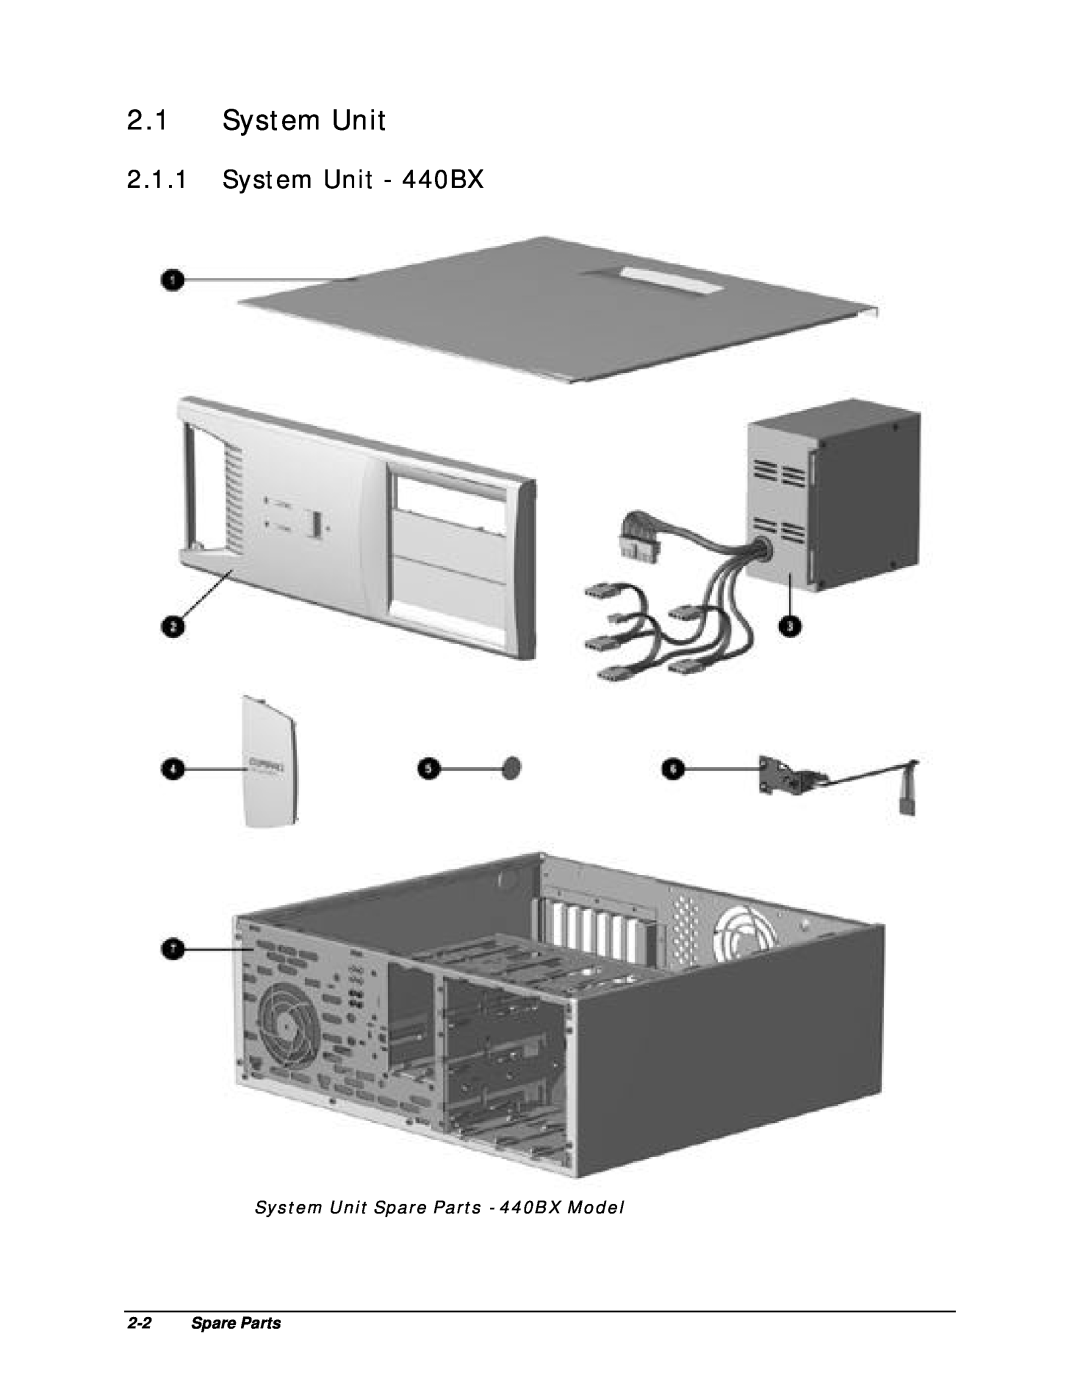 Compaq EP Series manual System Unit - 440BX, System Unit Spare Parts - 440BX Model 